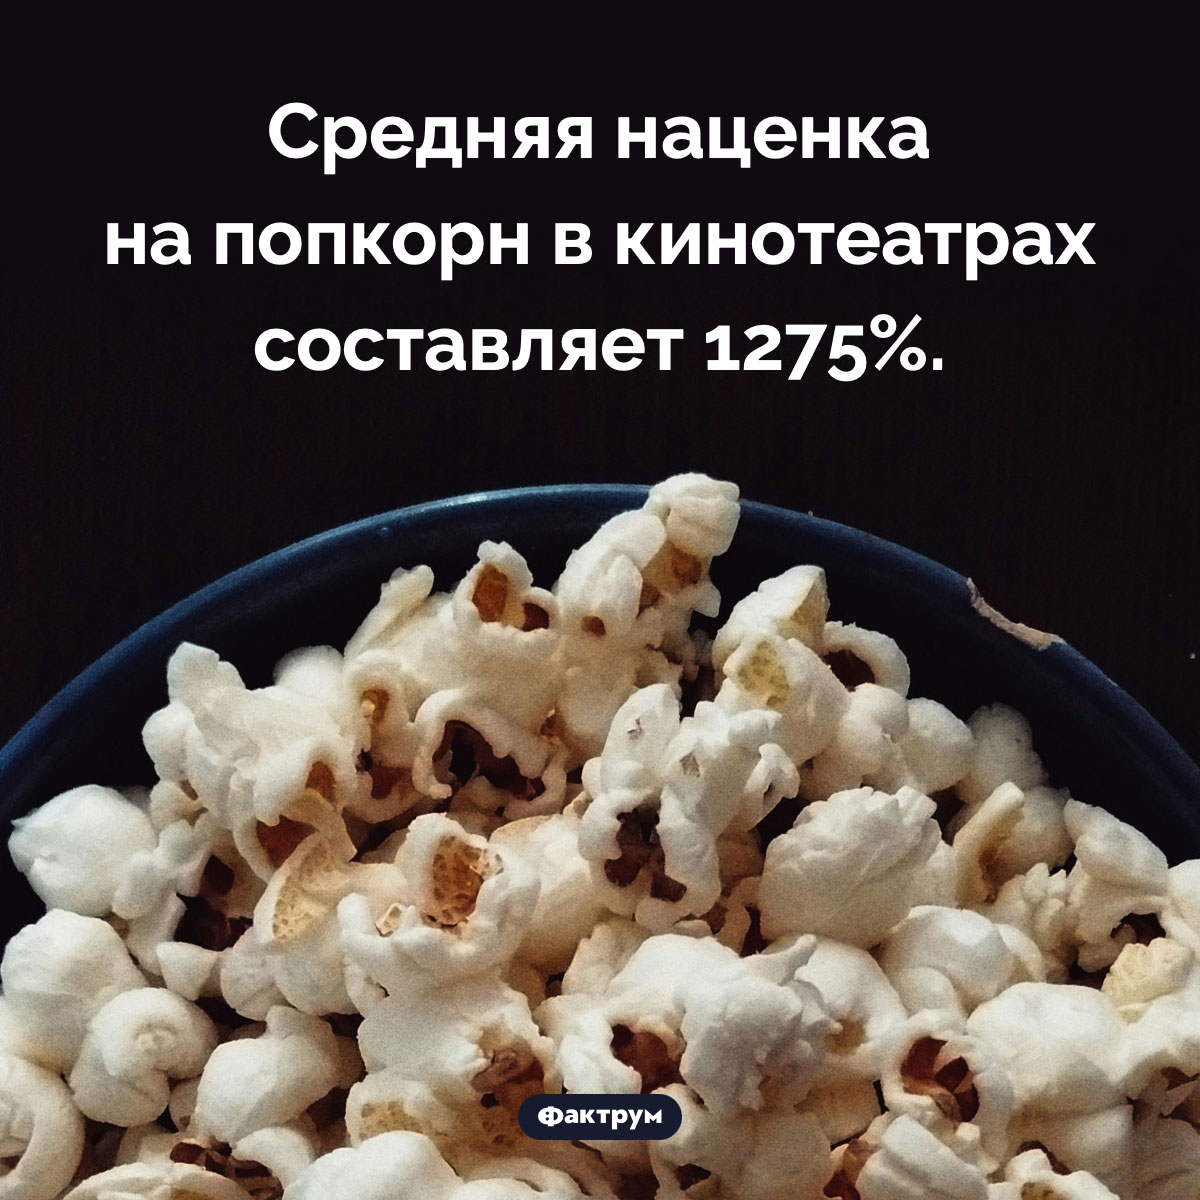 Сумасшедшая наценка на попкорн. Средняя наценка на попкорн в кинотеатрах составляет 1275%.